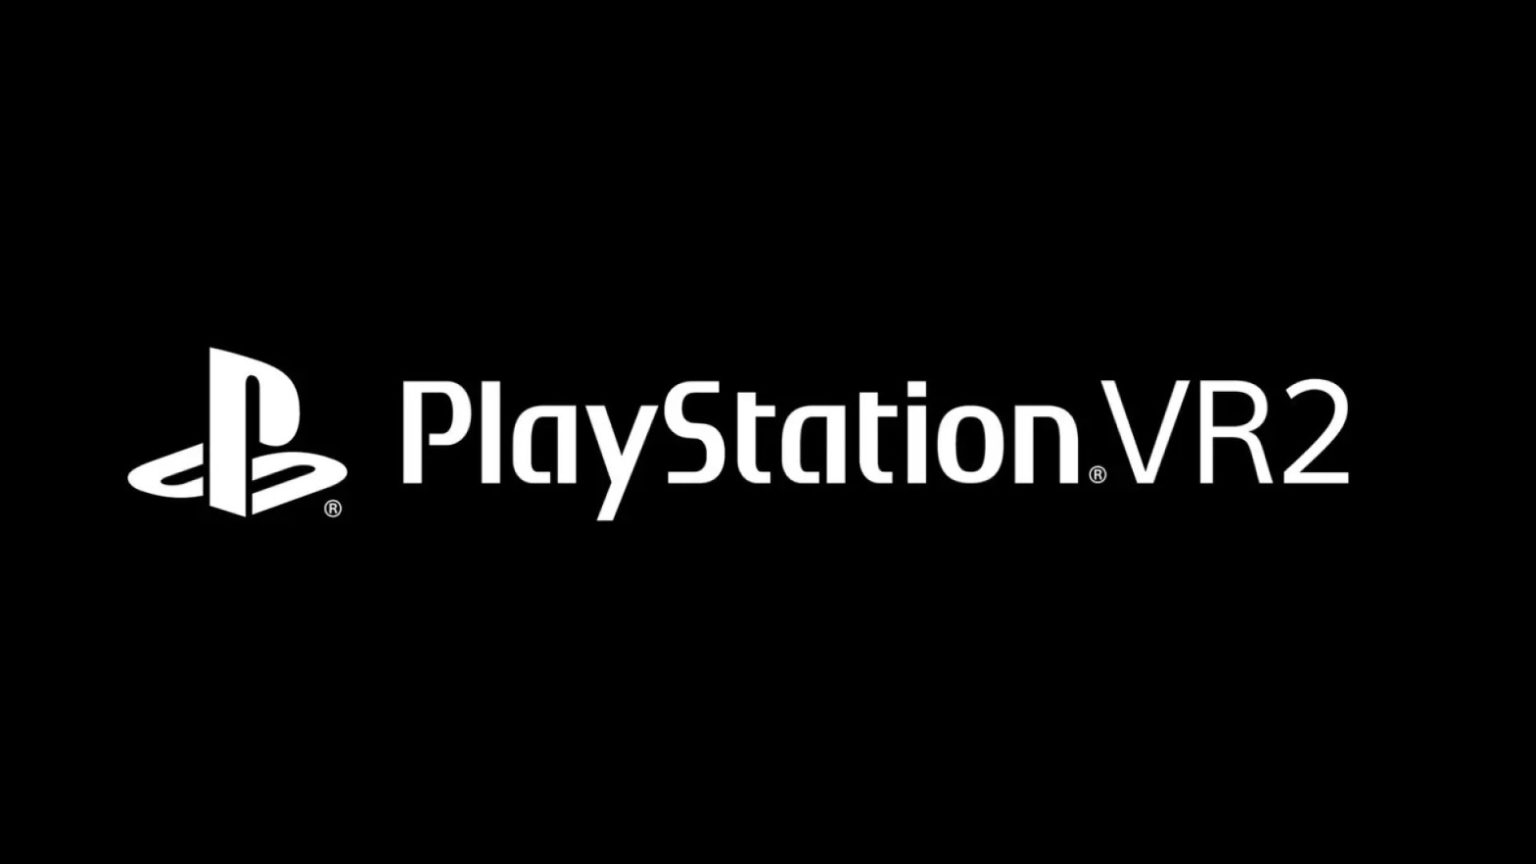 سونی به صورت رسمی هدست PlayStation VR2 را معرفی کرد